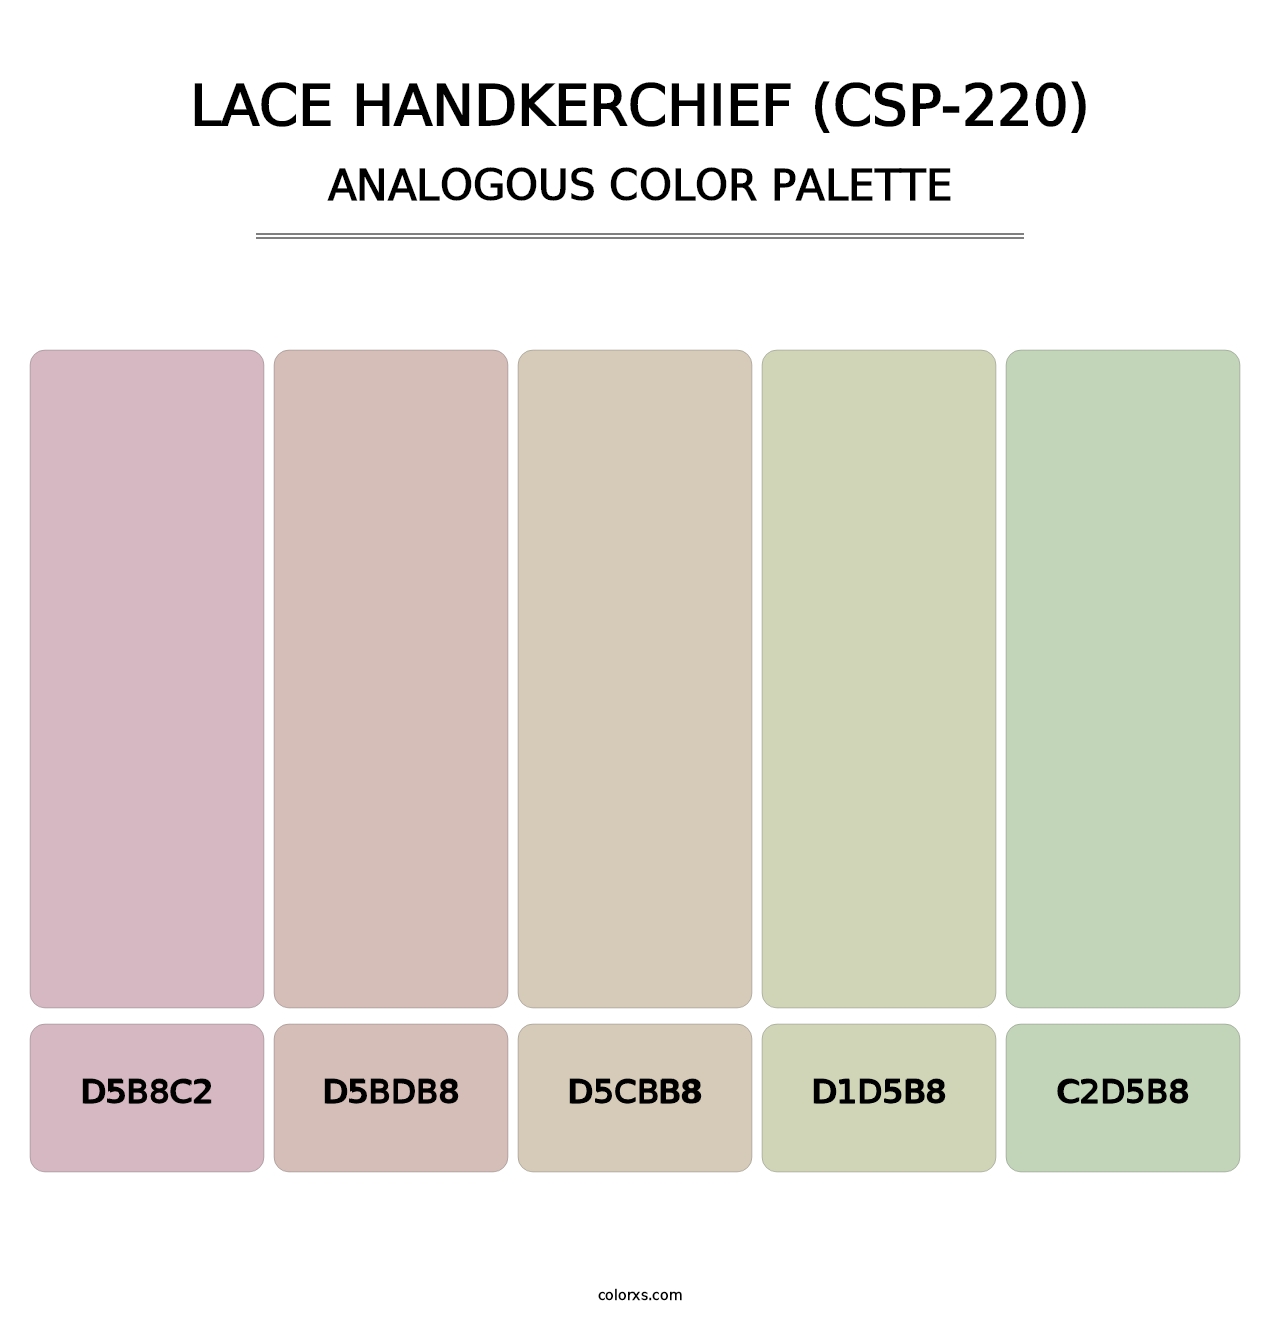 Lace Handkerchief (CSP-220) - Analogous Color Palette